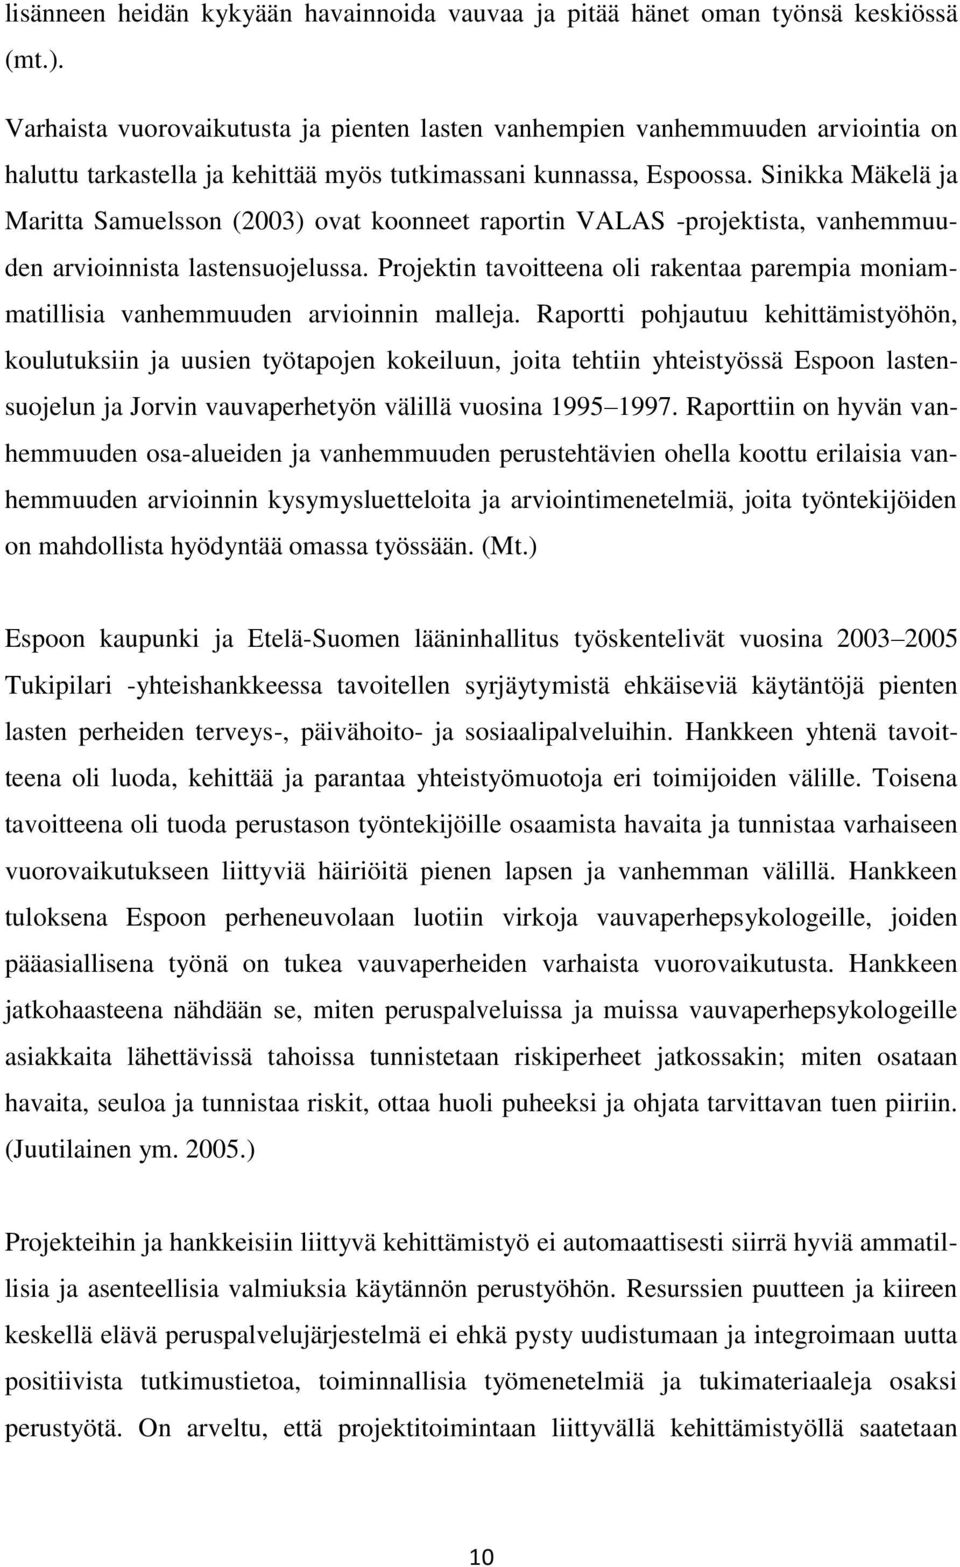 Sinikka Mäkelä ja Maritta Samuelsson (2003) ovat koonneet raportin VALAS -projektista, vanhemmuuden arvioinnista lastensuojelussa.